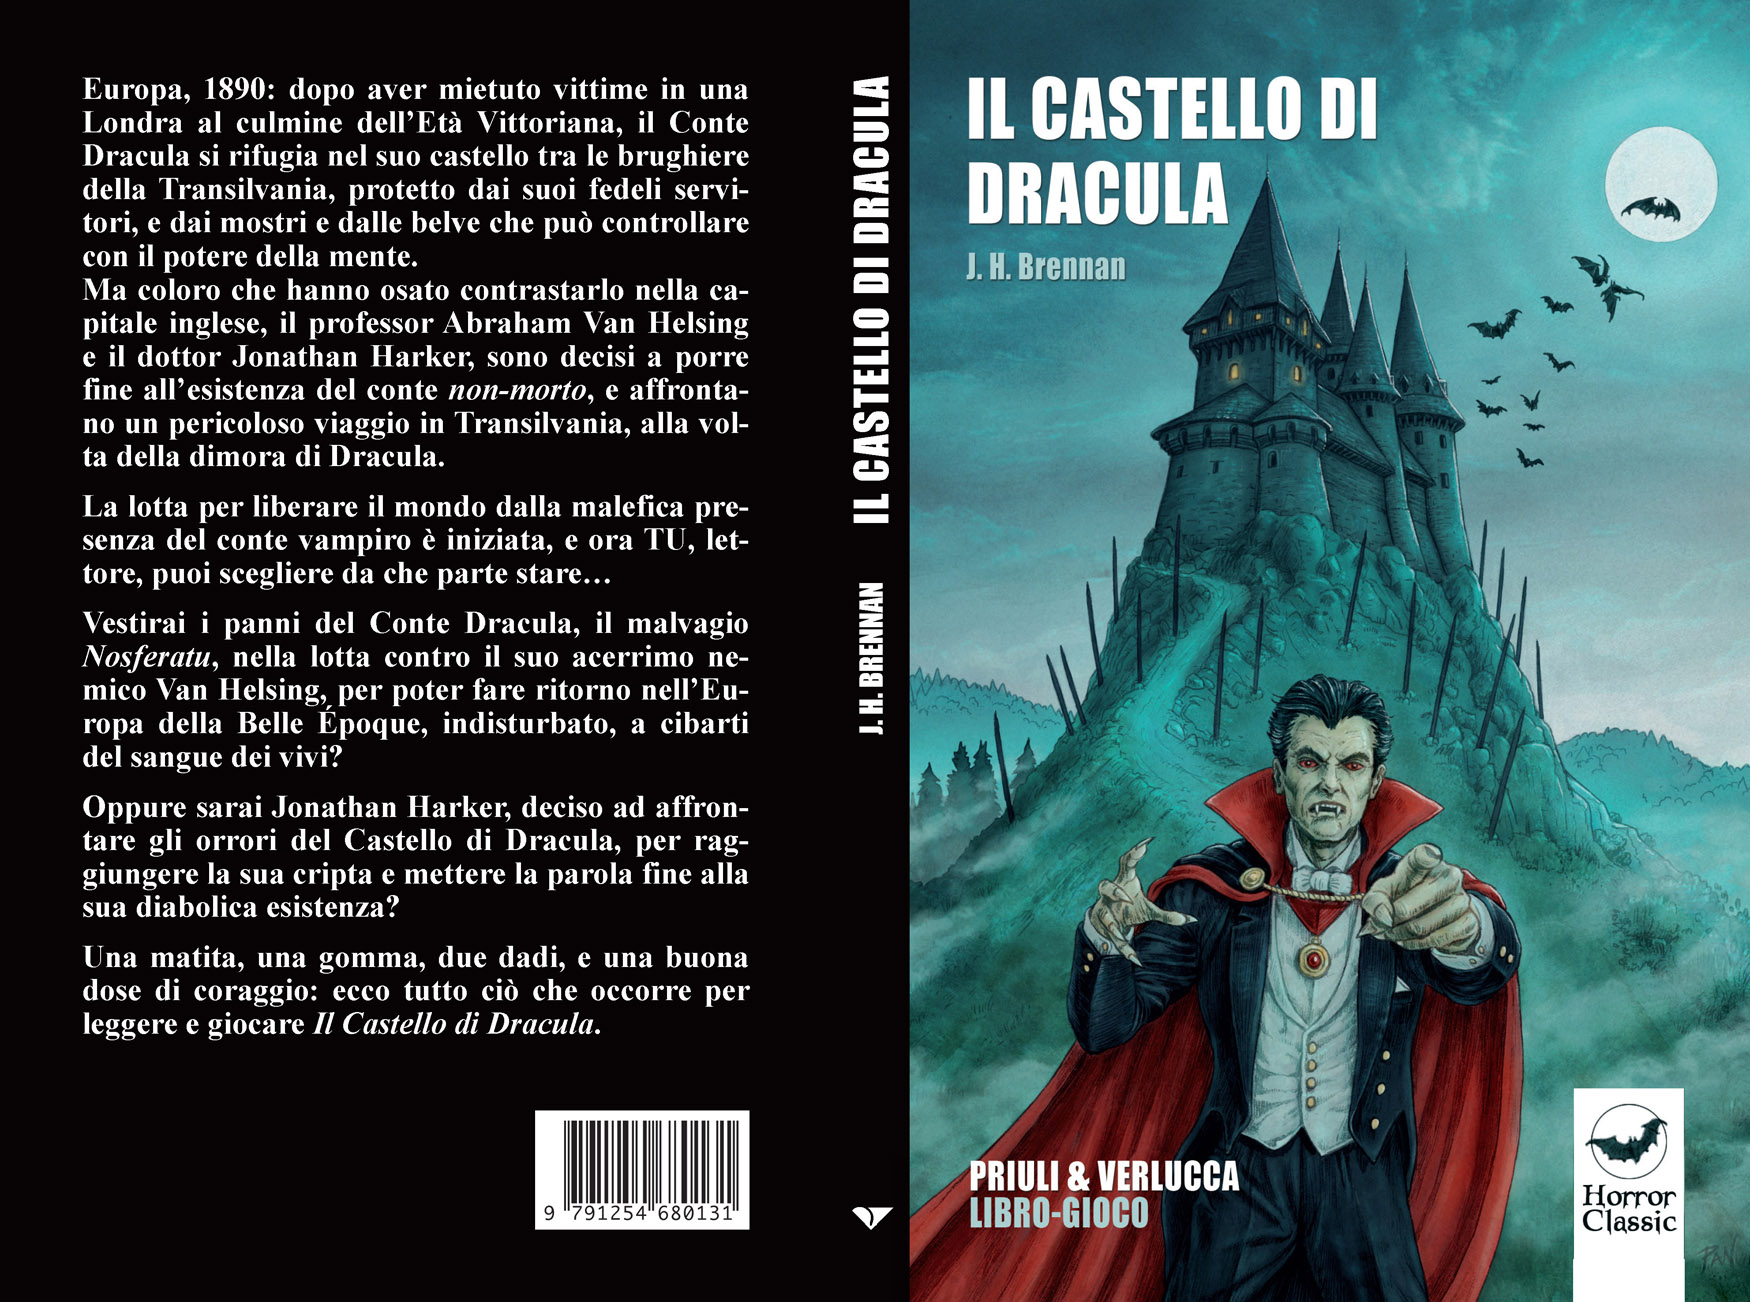 Il castello di Dracula copertina, editore Priuli & Verlucca